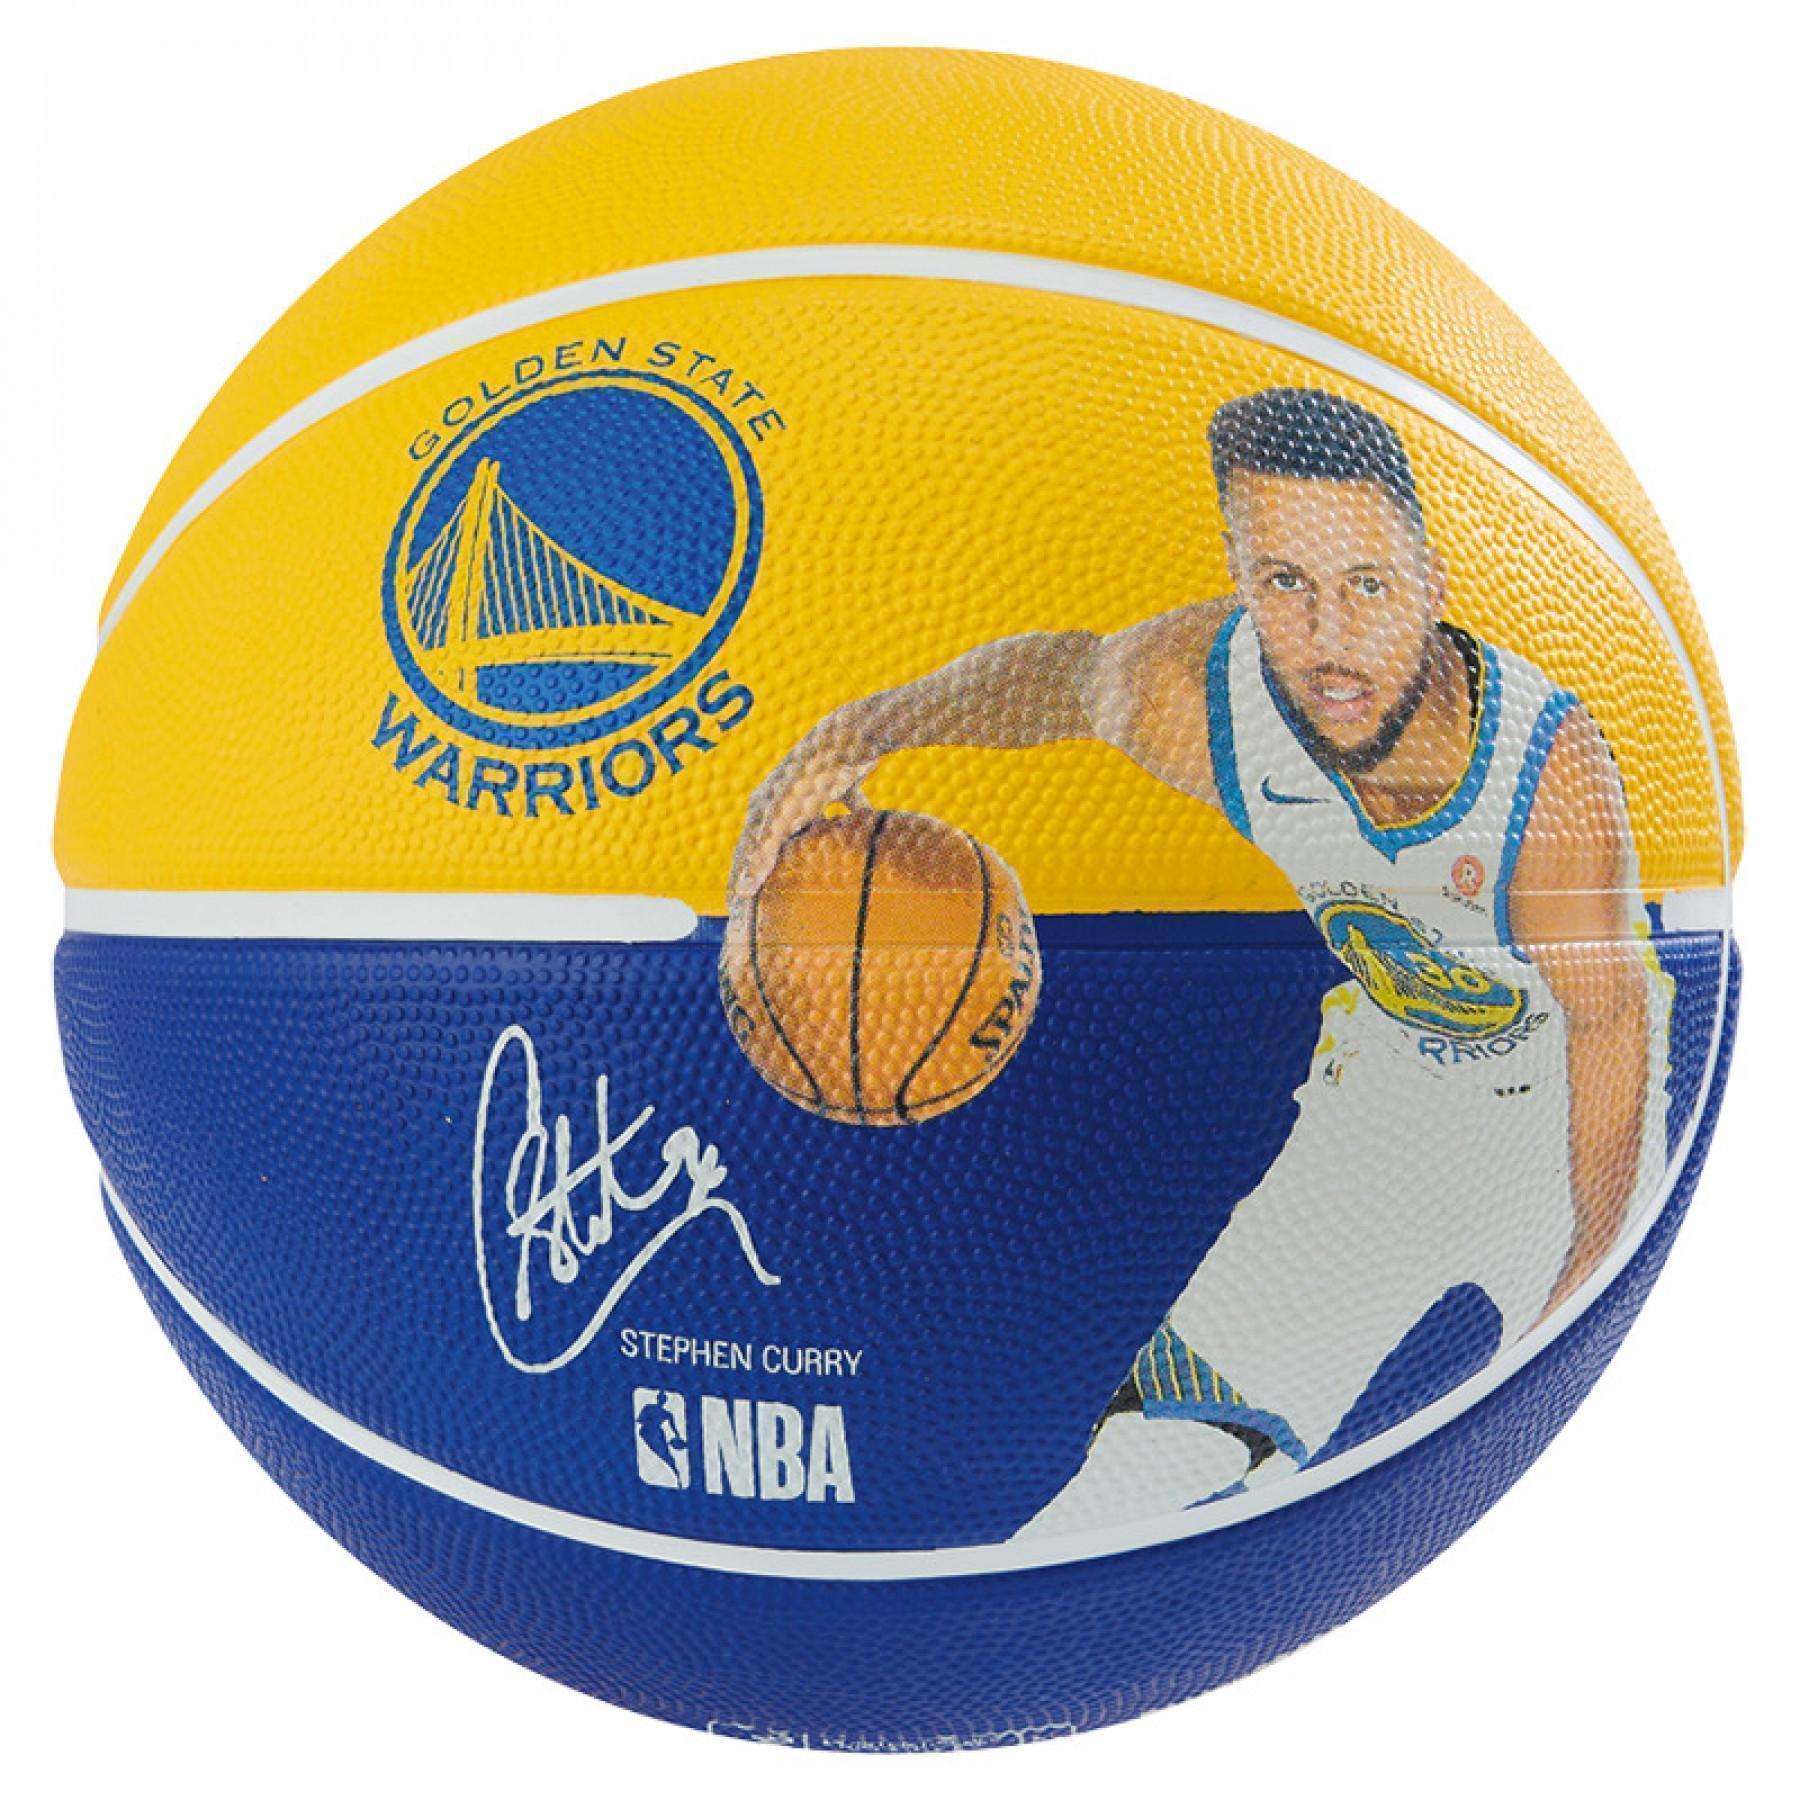 Ballon Spalding NBA Player Stephen Curry (83-866z)